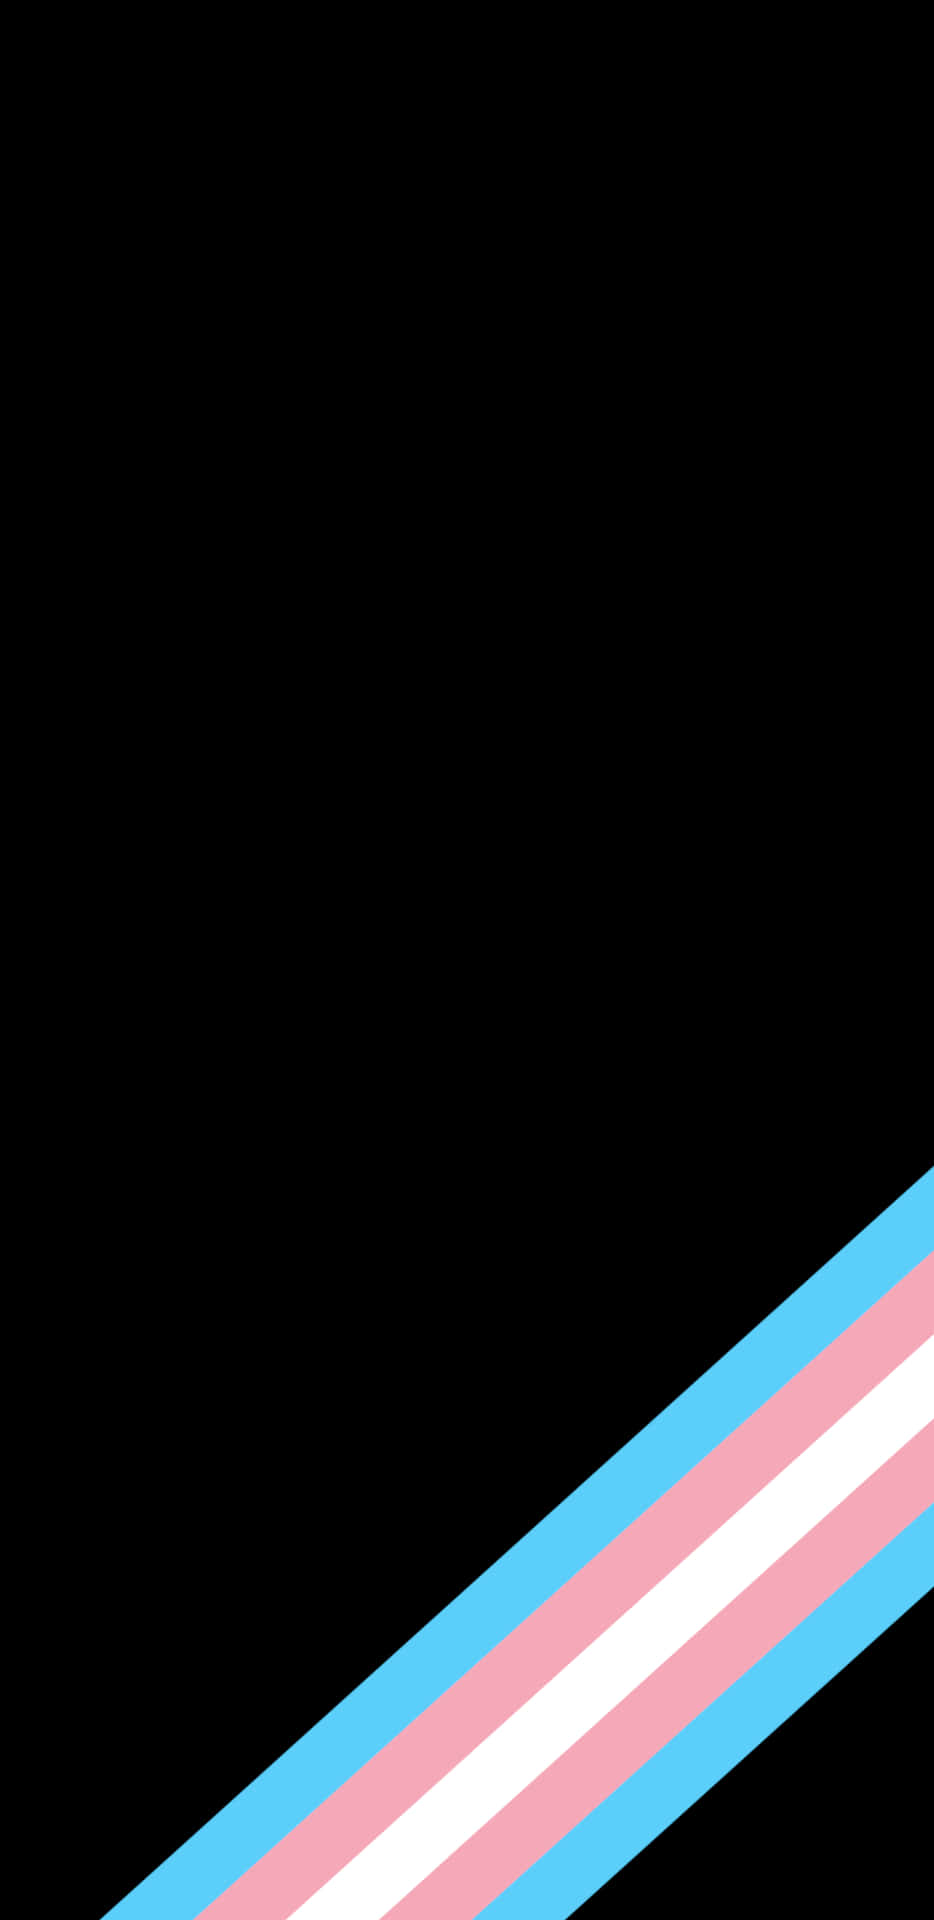 Amoled Background Transgender Flag Colors